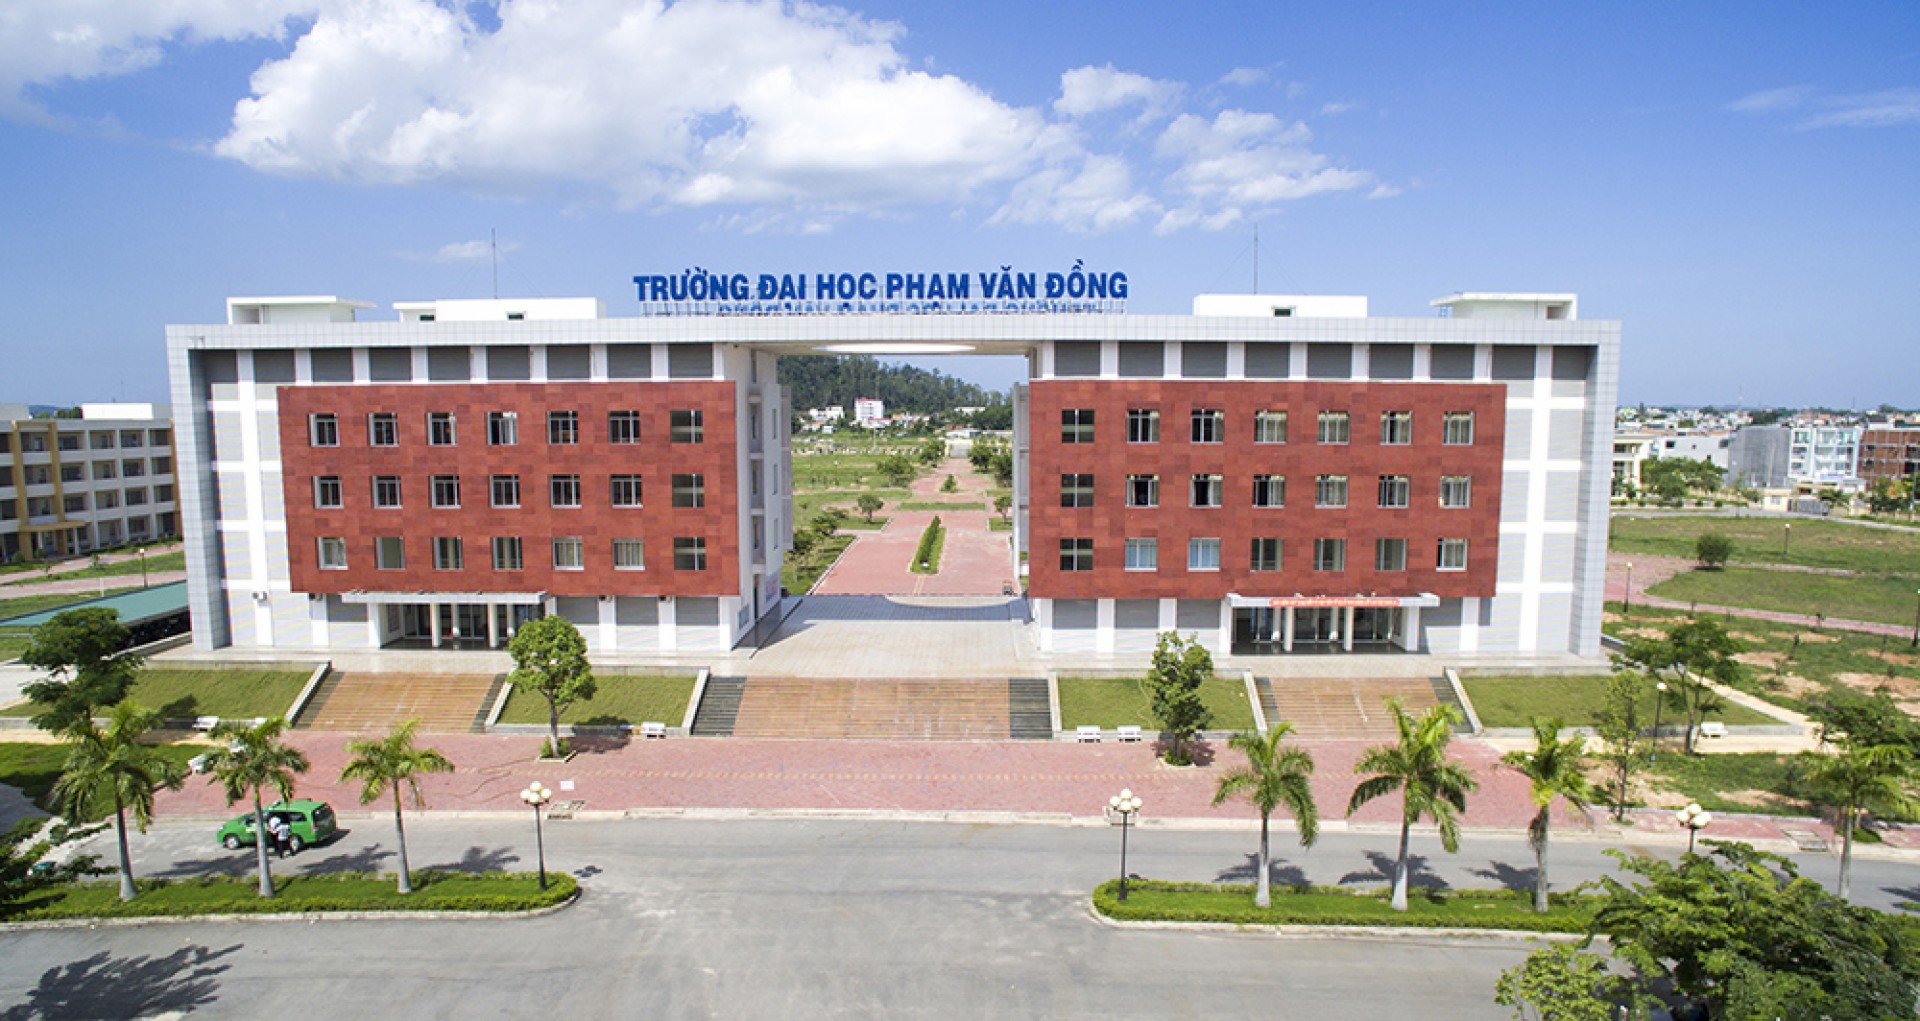 Học phí mới nhất Đại học Phạm Văn Đồng năm 2019 như thế nào so với các trường khác?